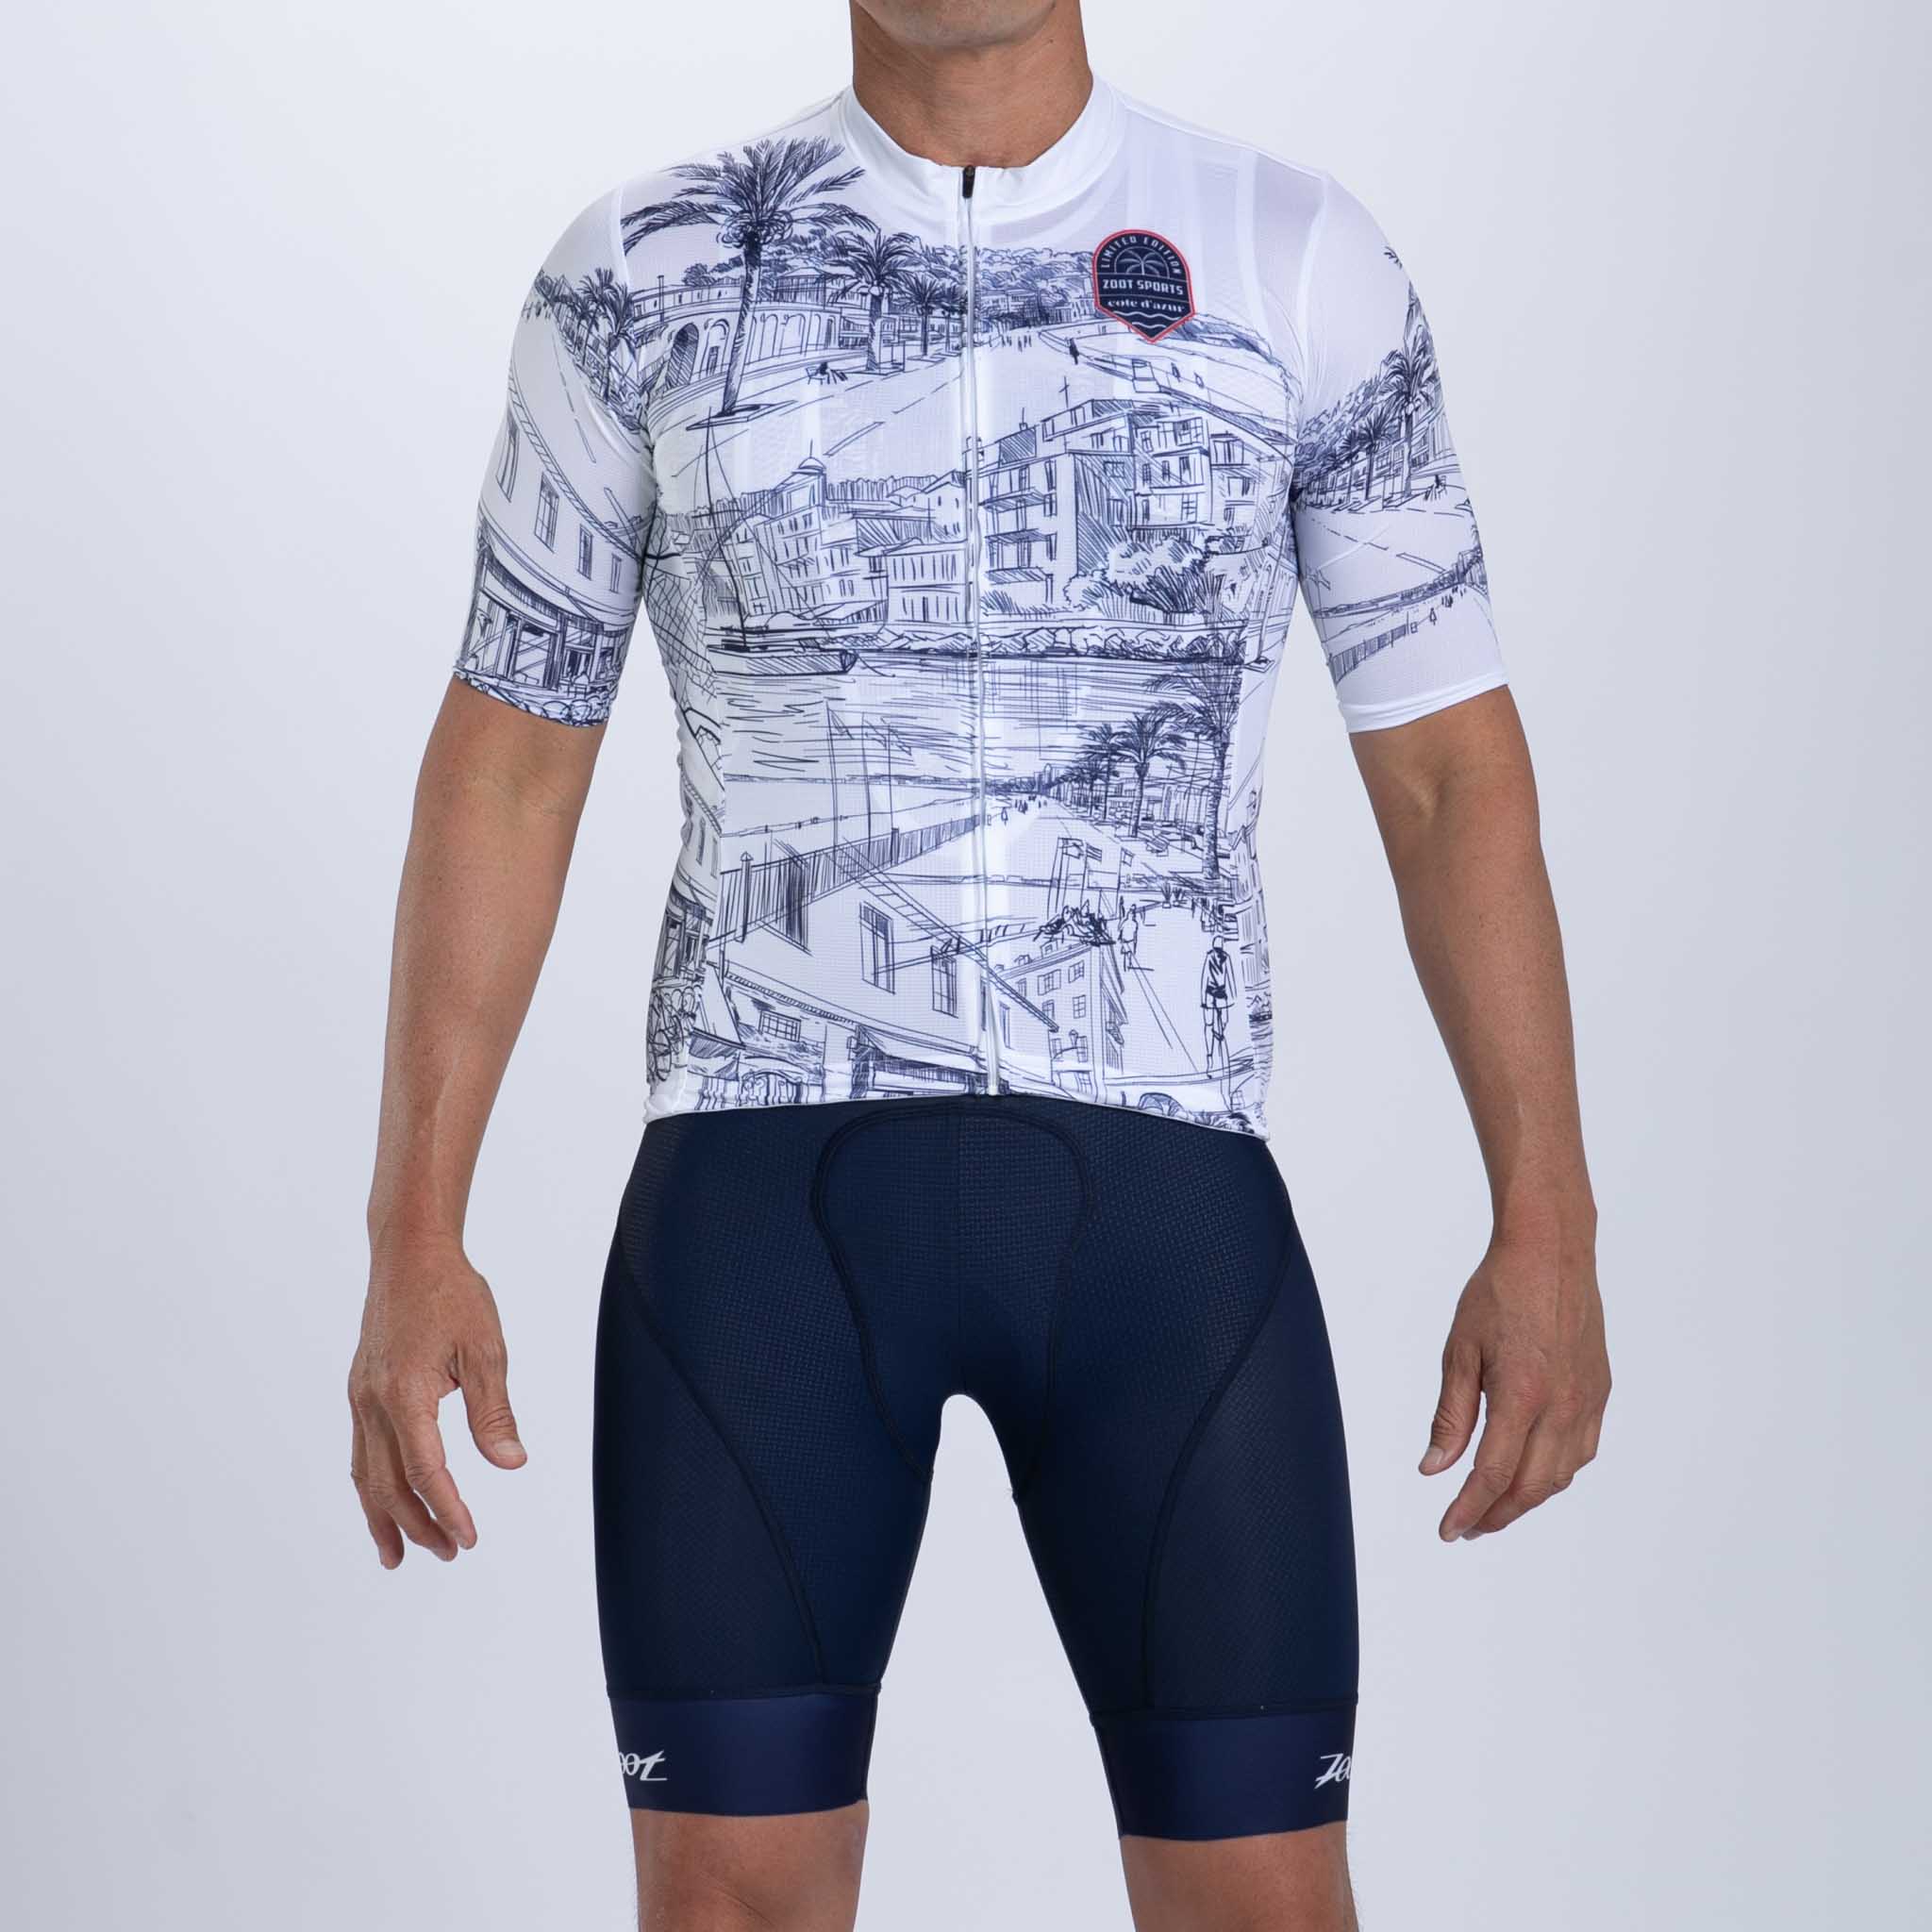 Men's Ltd Cycle Aero Jersey - Cote d'Azur